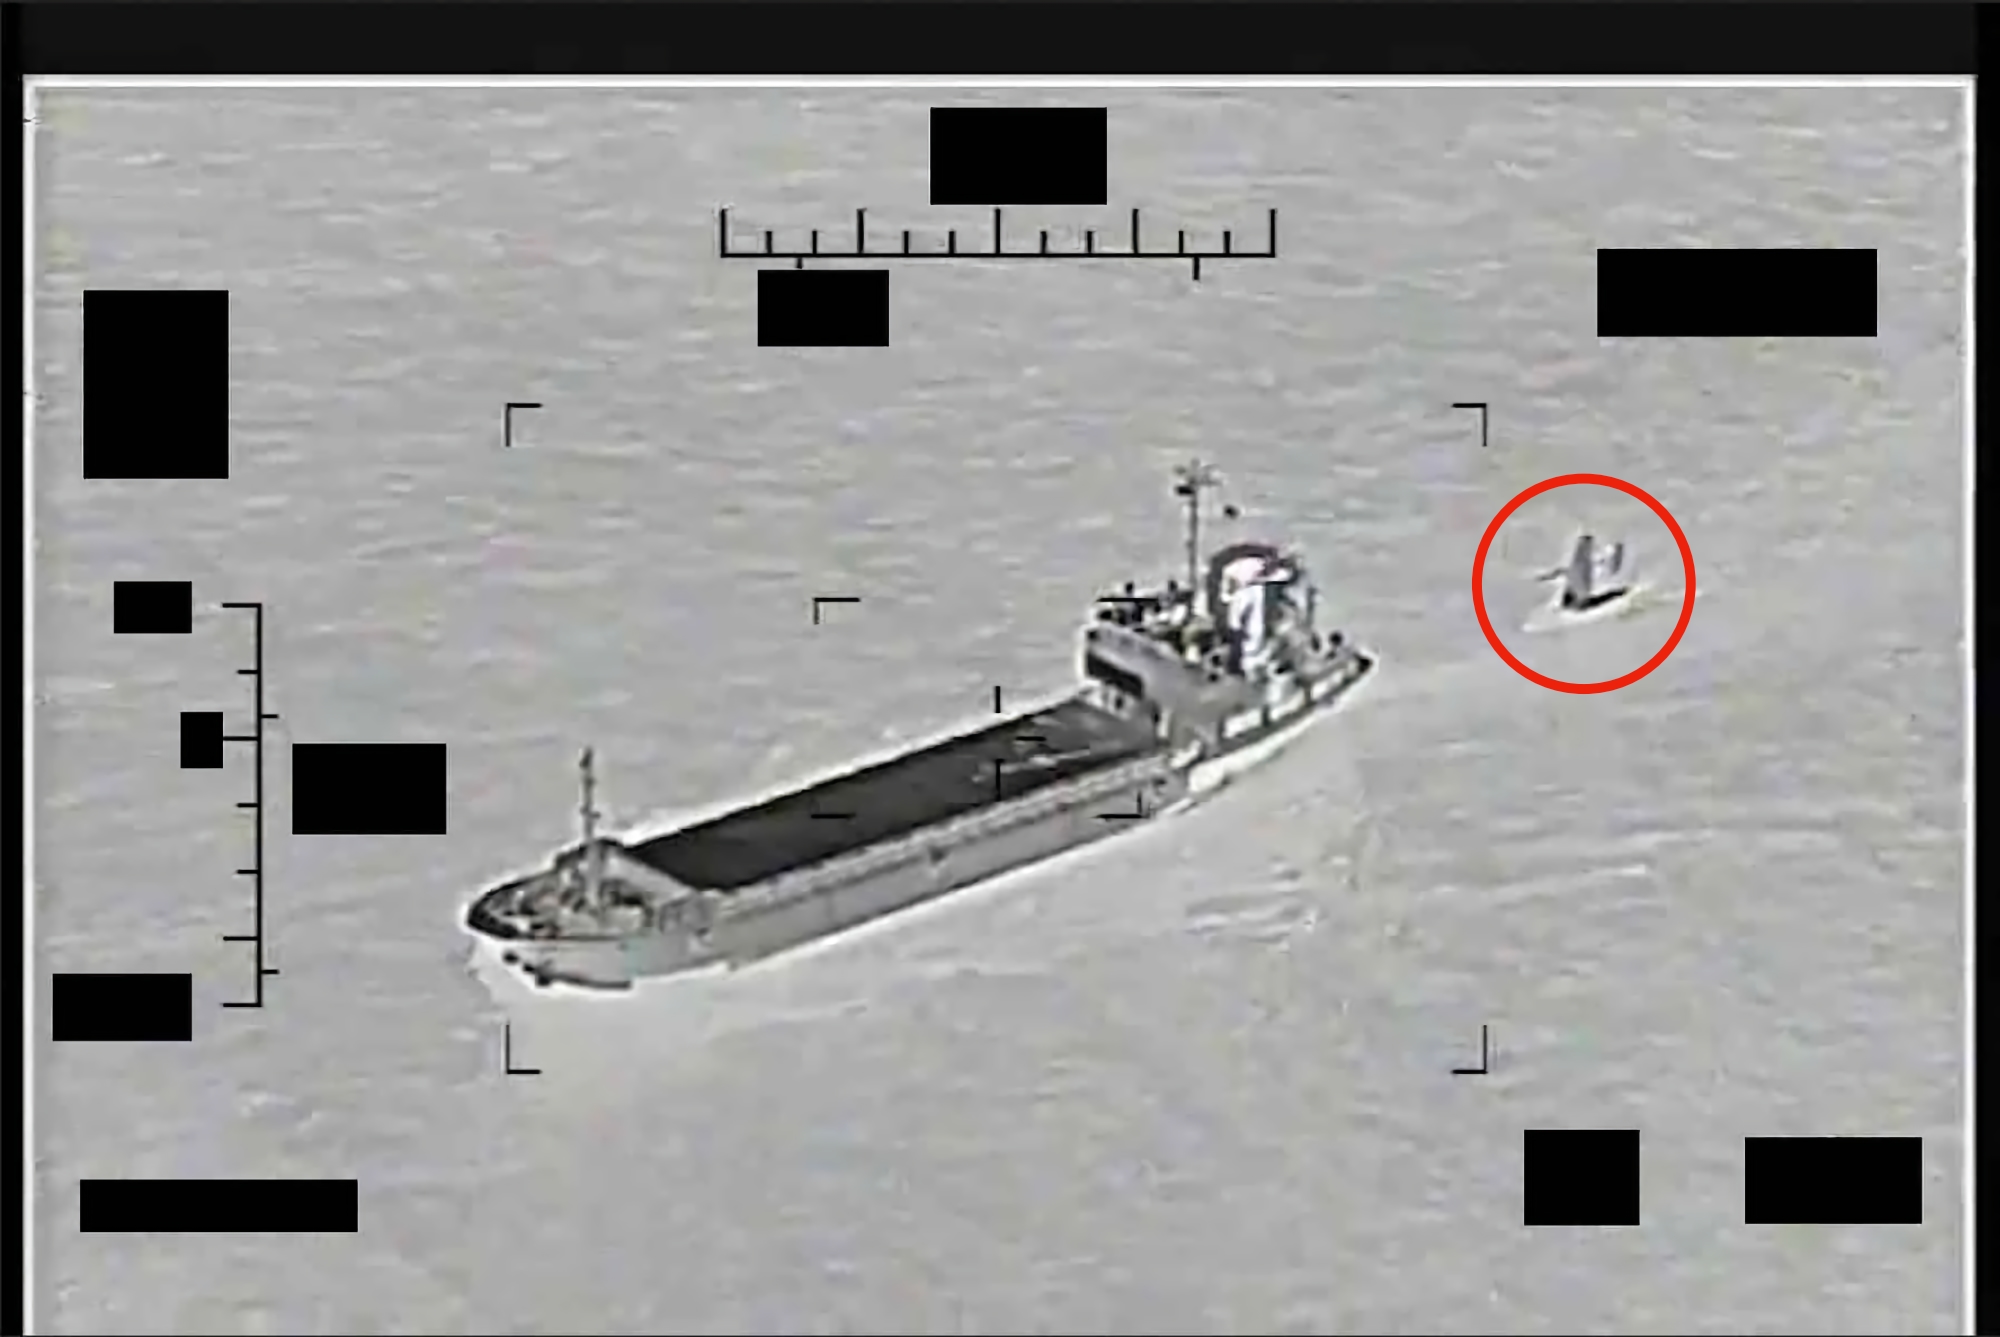 Iran próbował porwać amerykańskiego Saildrone Explorer w Zatoce Perskiej, a następnie łódź patrolową USS Thunderbolt i helikopter MH-60S Sea Hawk